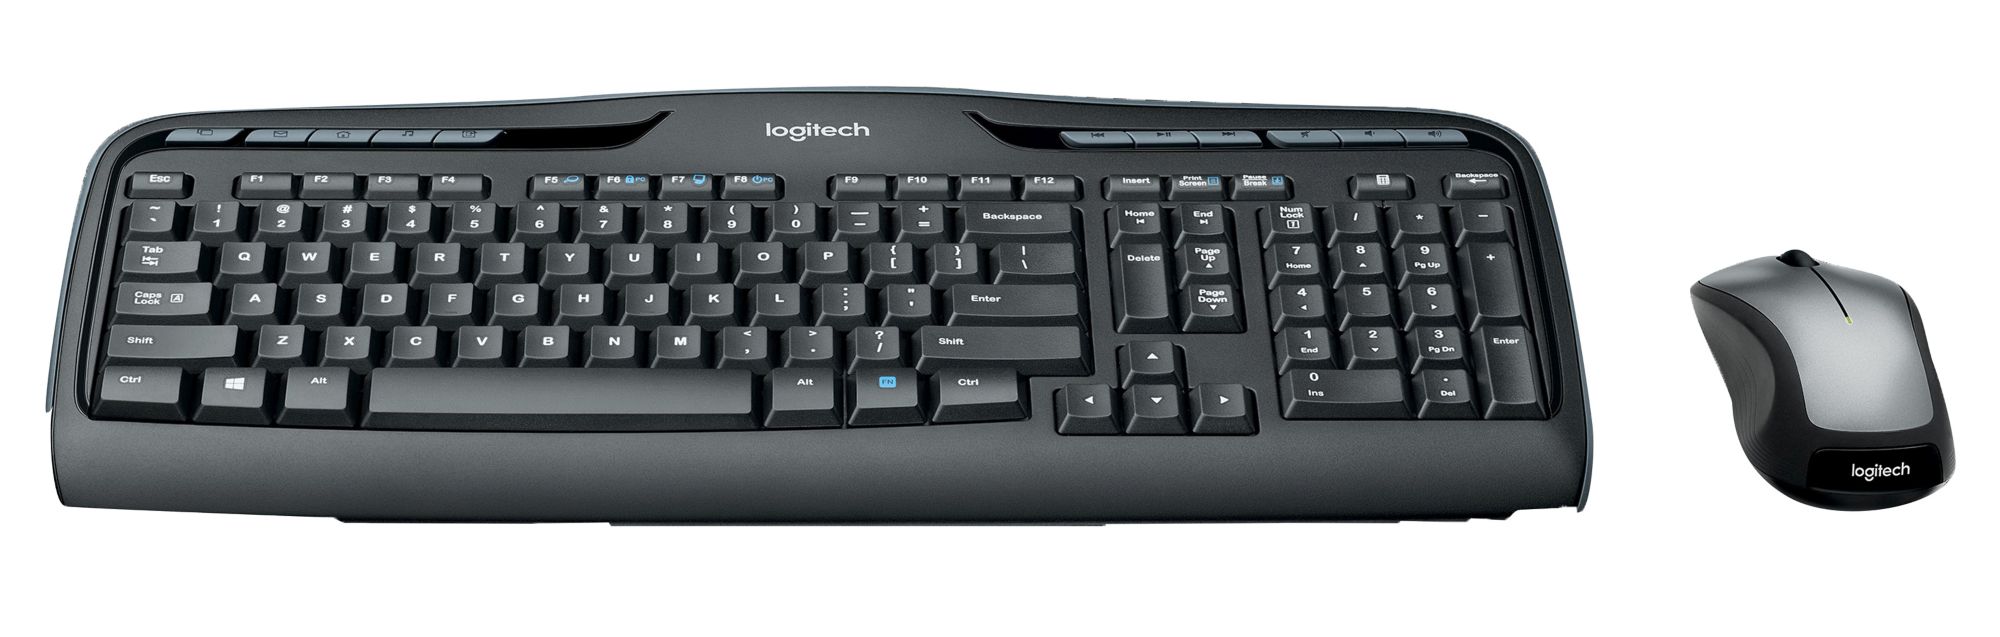 Logitech MK335 Wireless Keyboard and Mouse